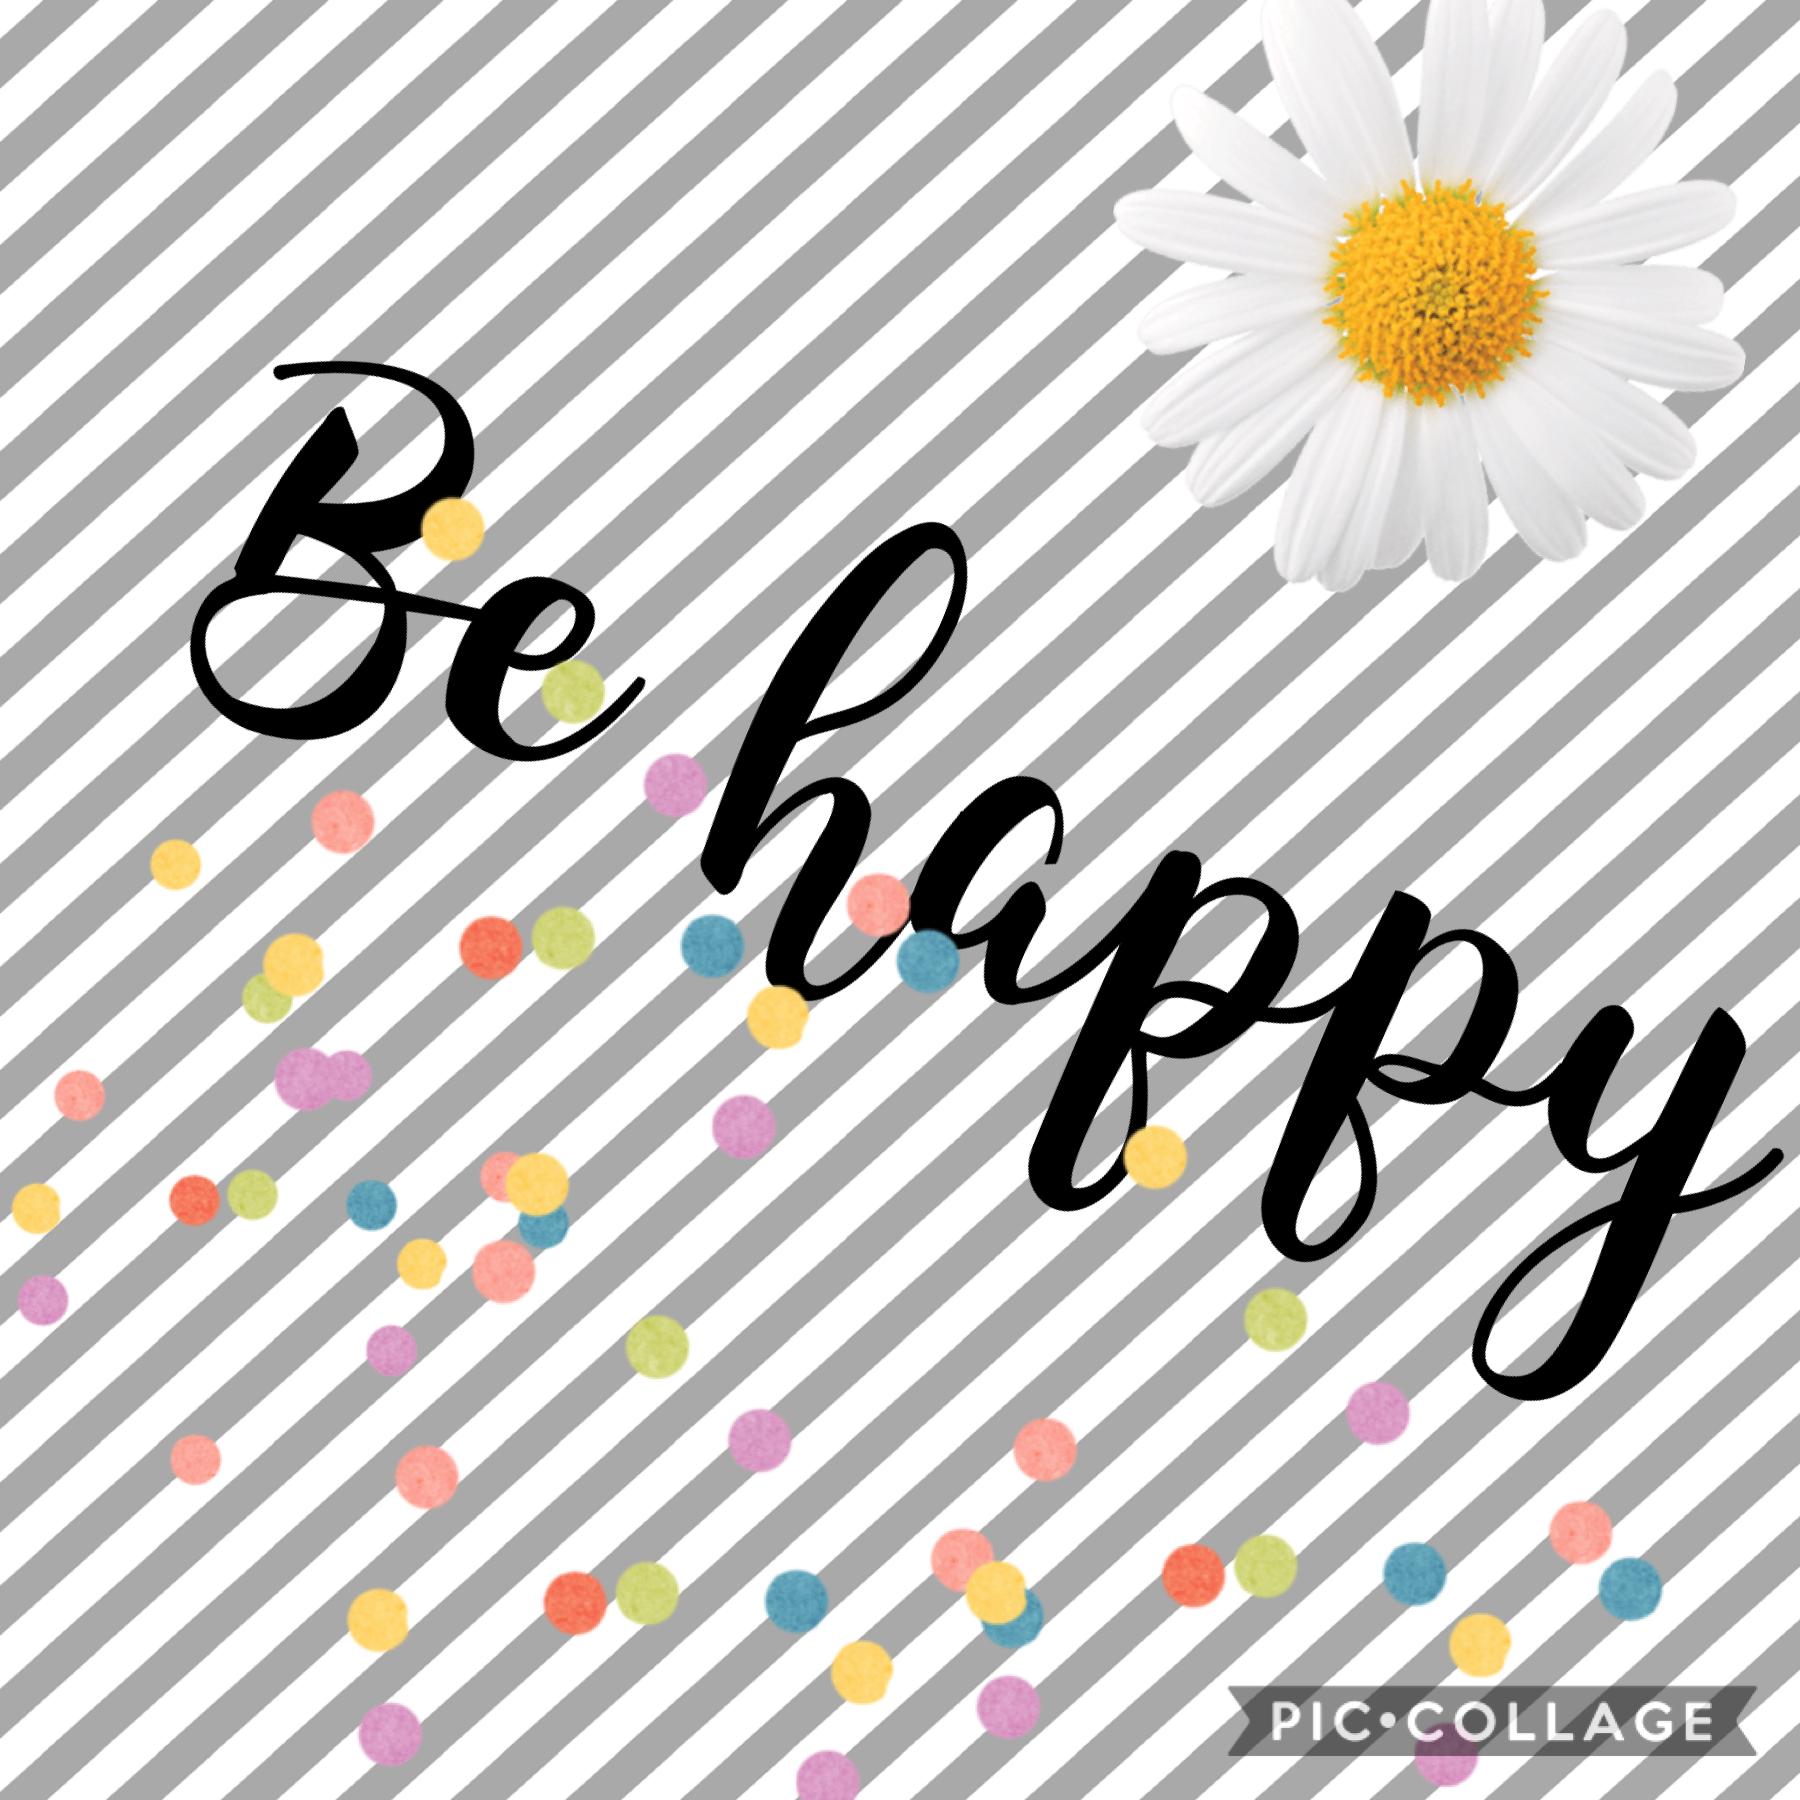 Be happy always